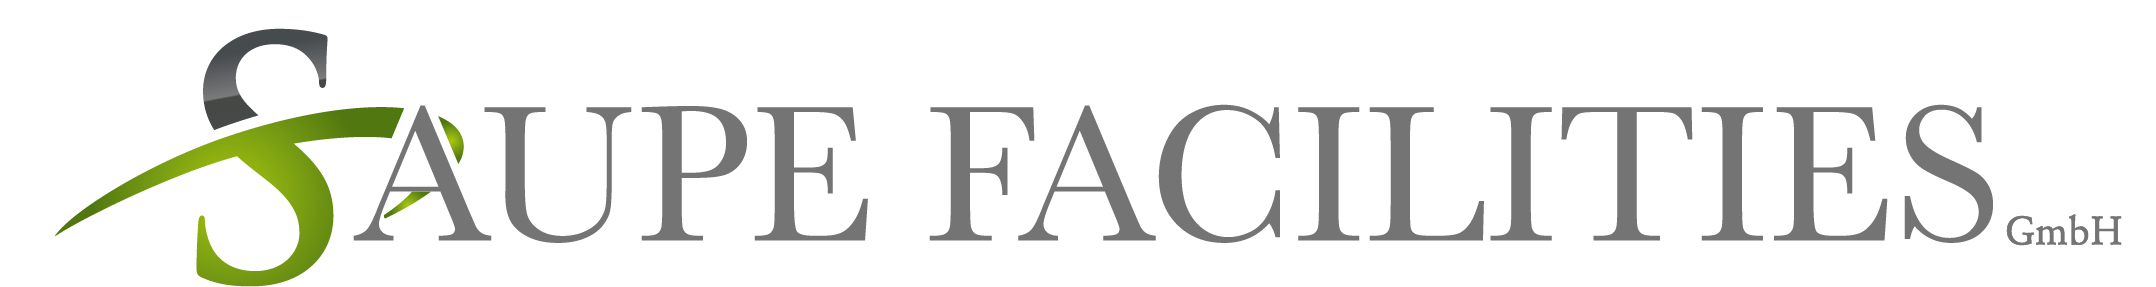 Das Saupe Facilities Logo